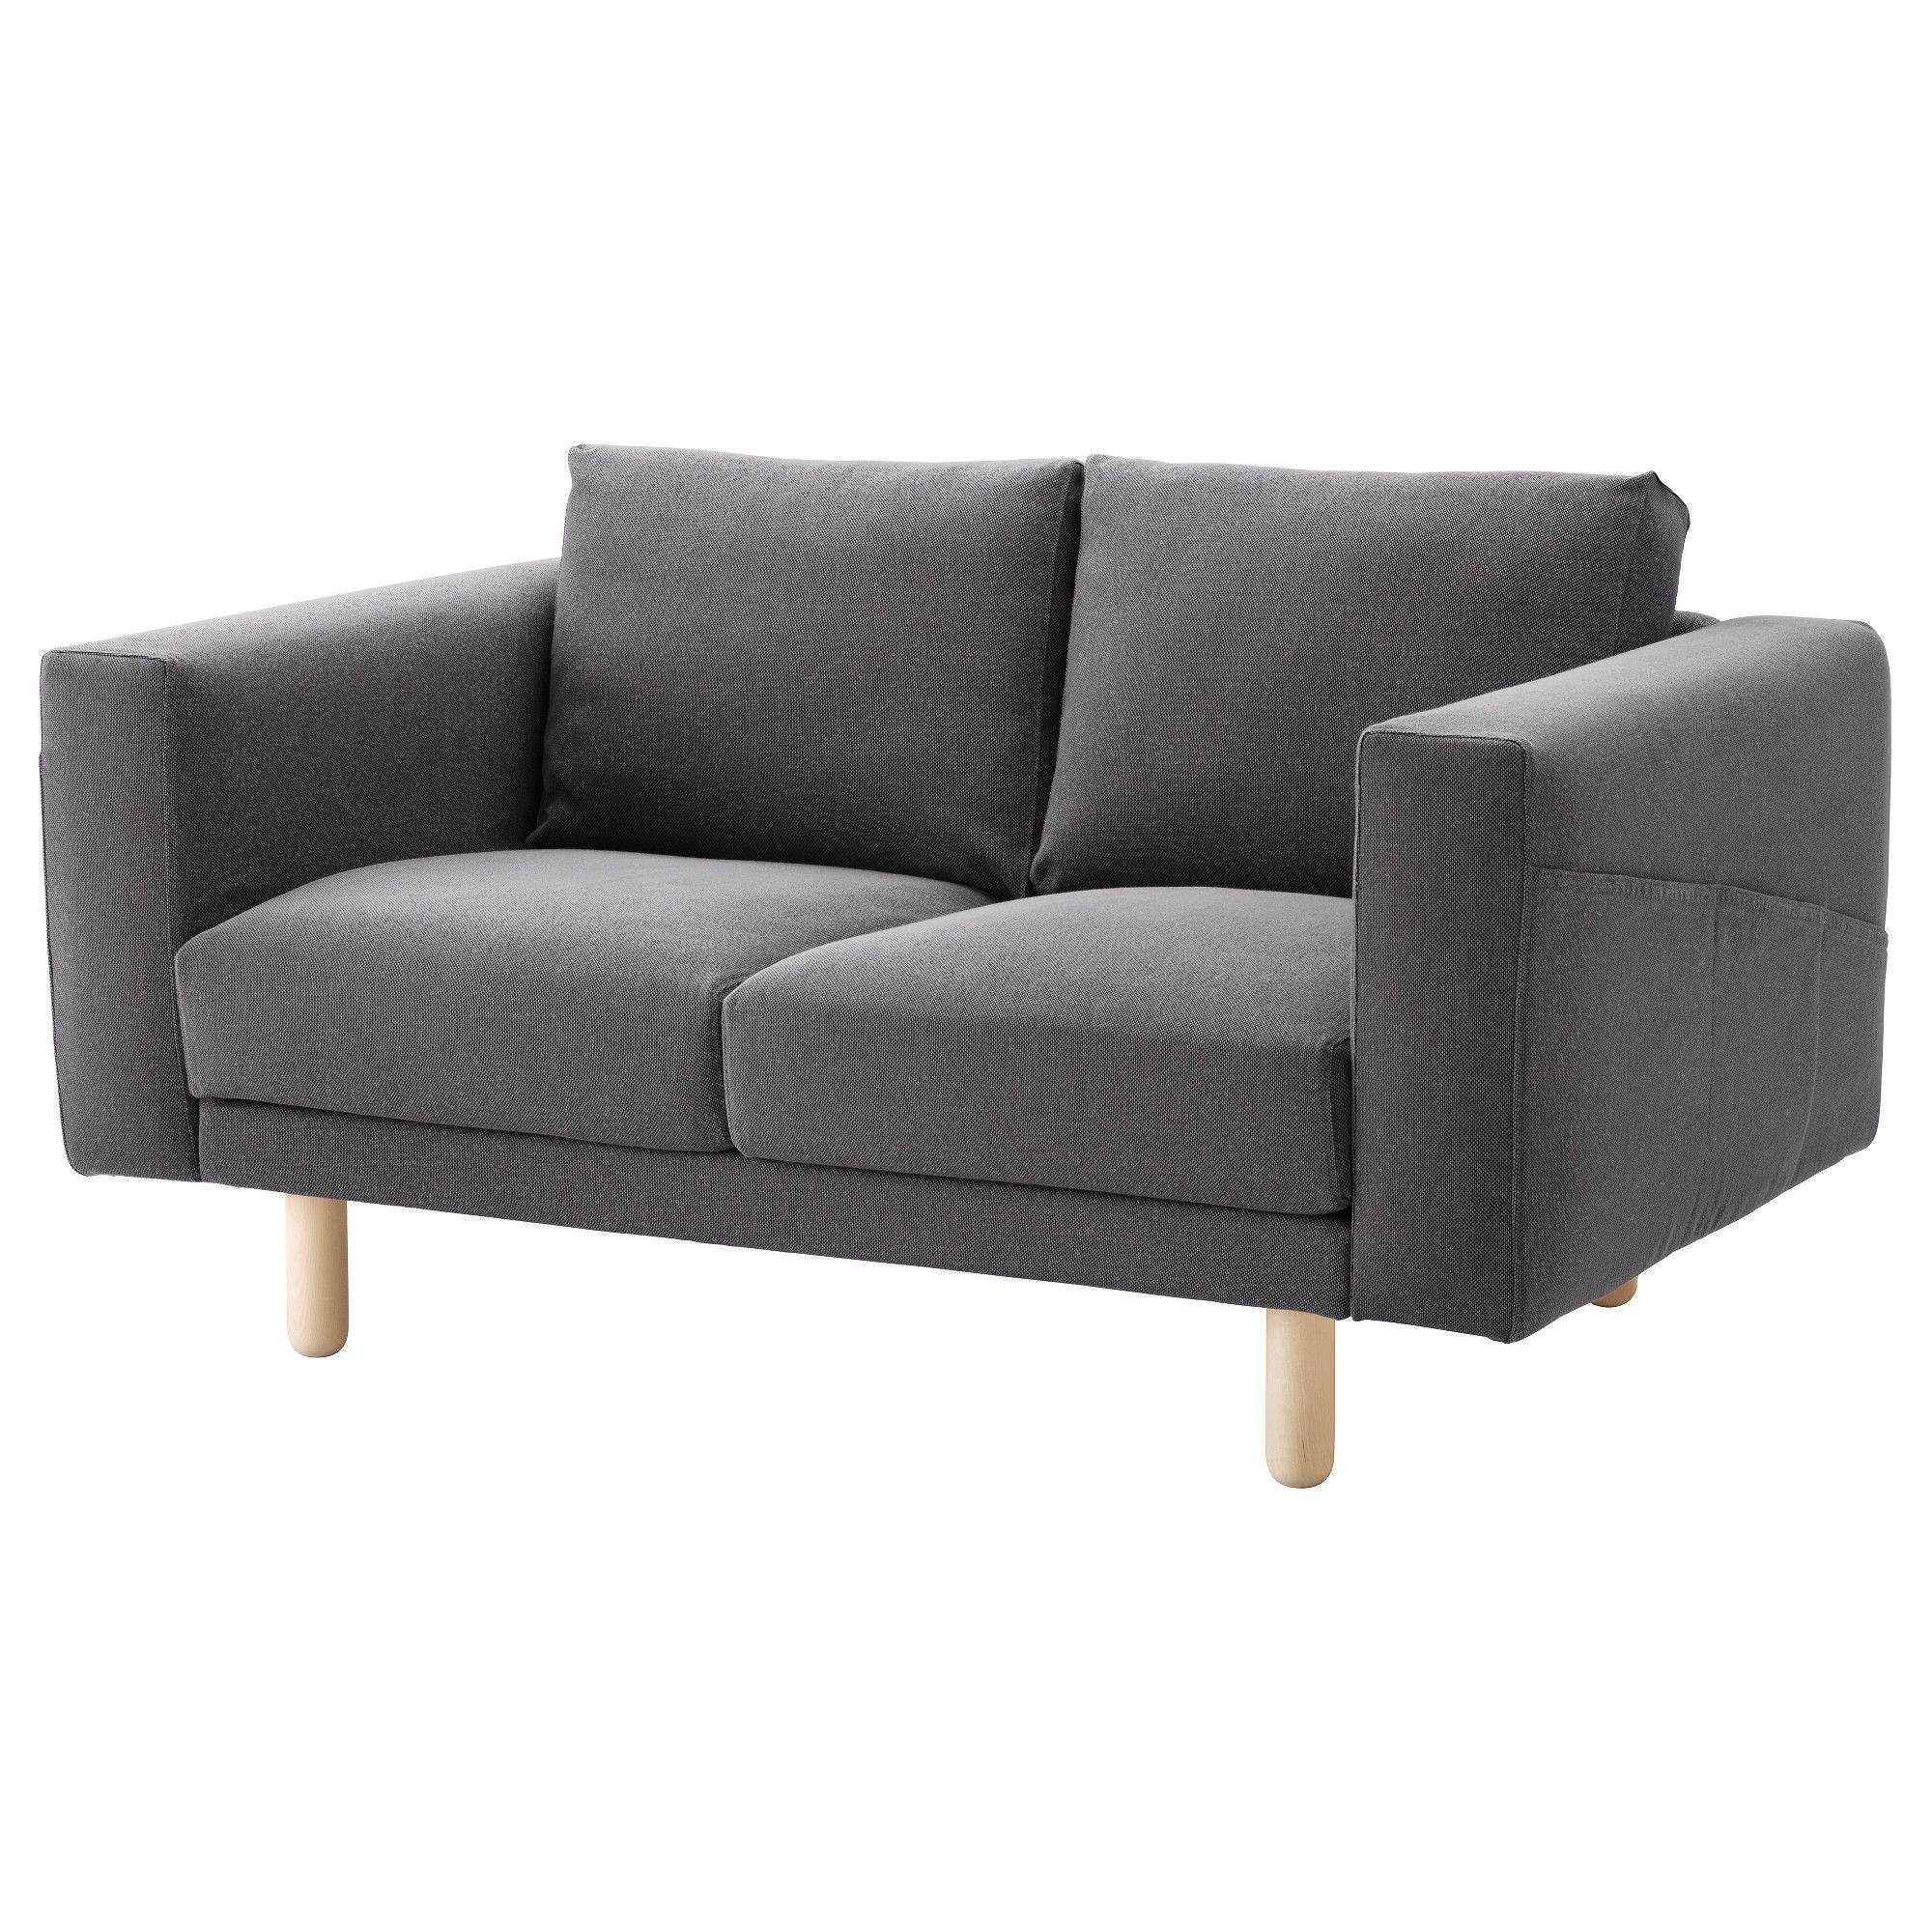 Two Seater Sofas | Ikea Ireland – Dublin With Regard To Mini Sofas (Photo 3 of 10)